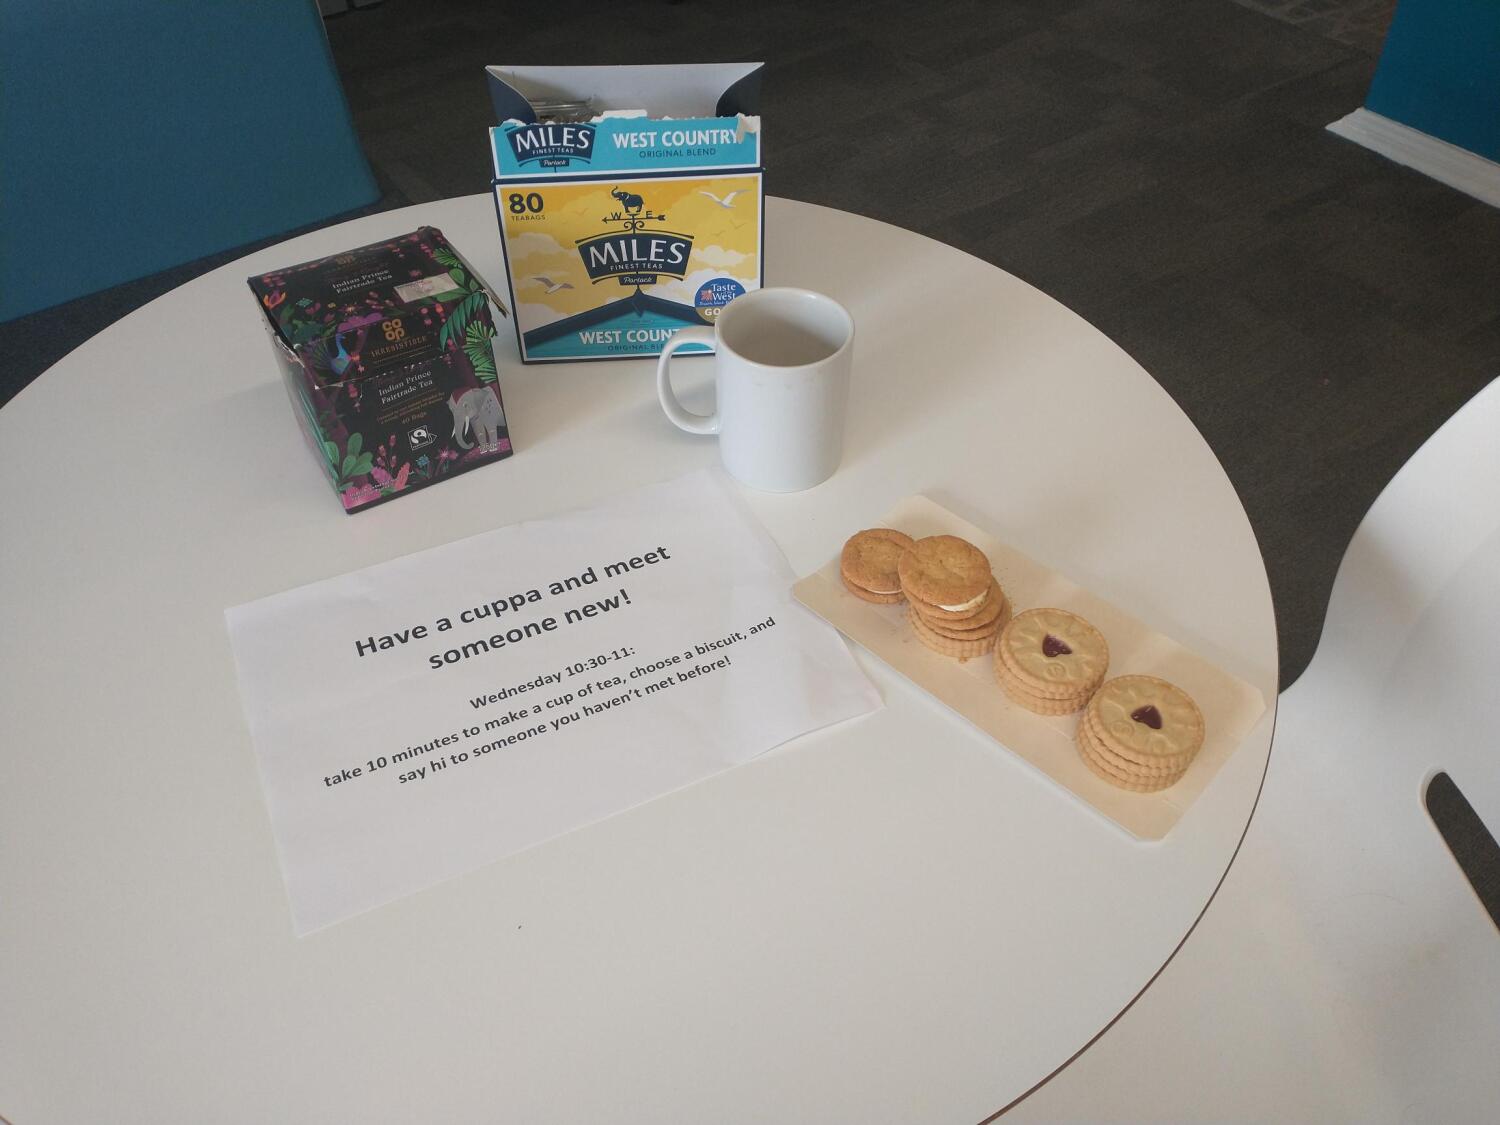 Kekse und eine Kaffeetasse auf einem Tisch, dazu ein Schild mit der Aufschrift "Have a cup and meet someone new"